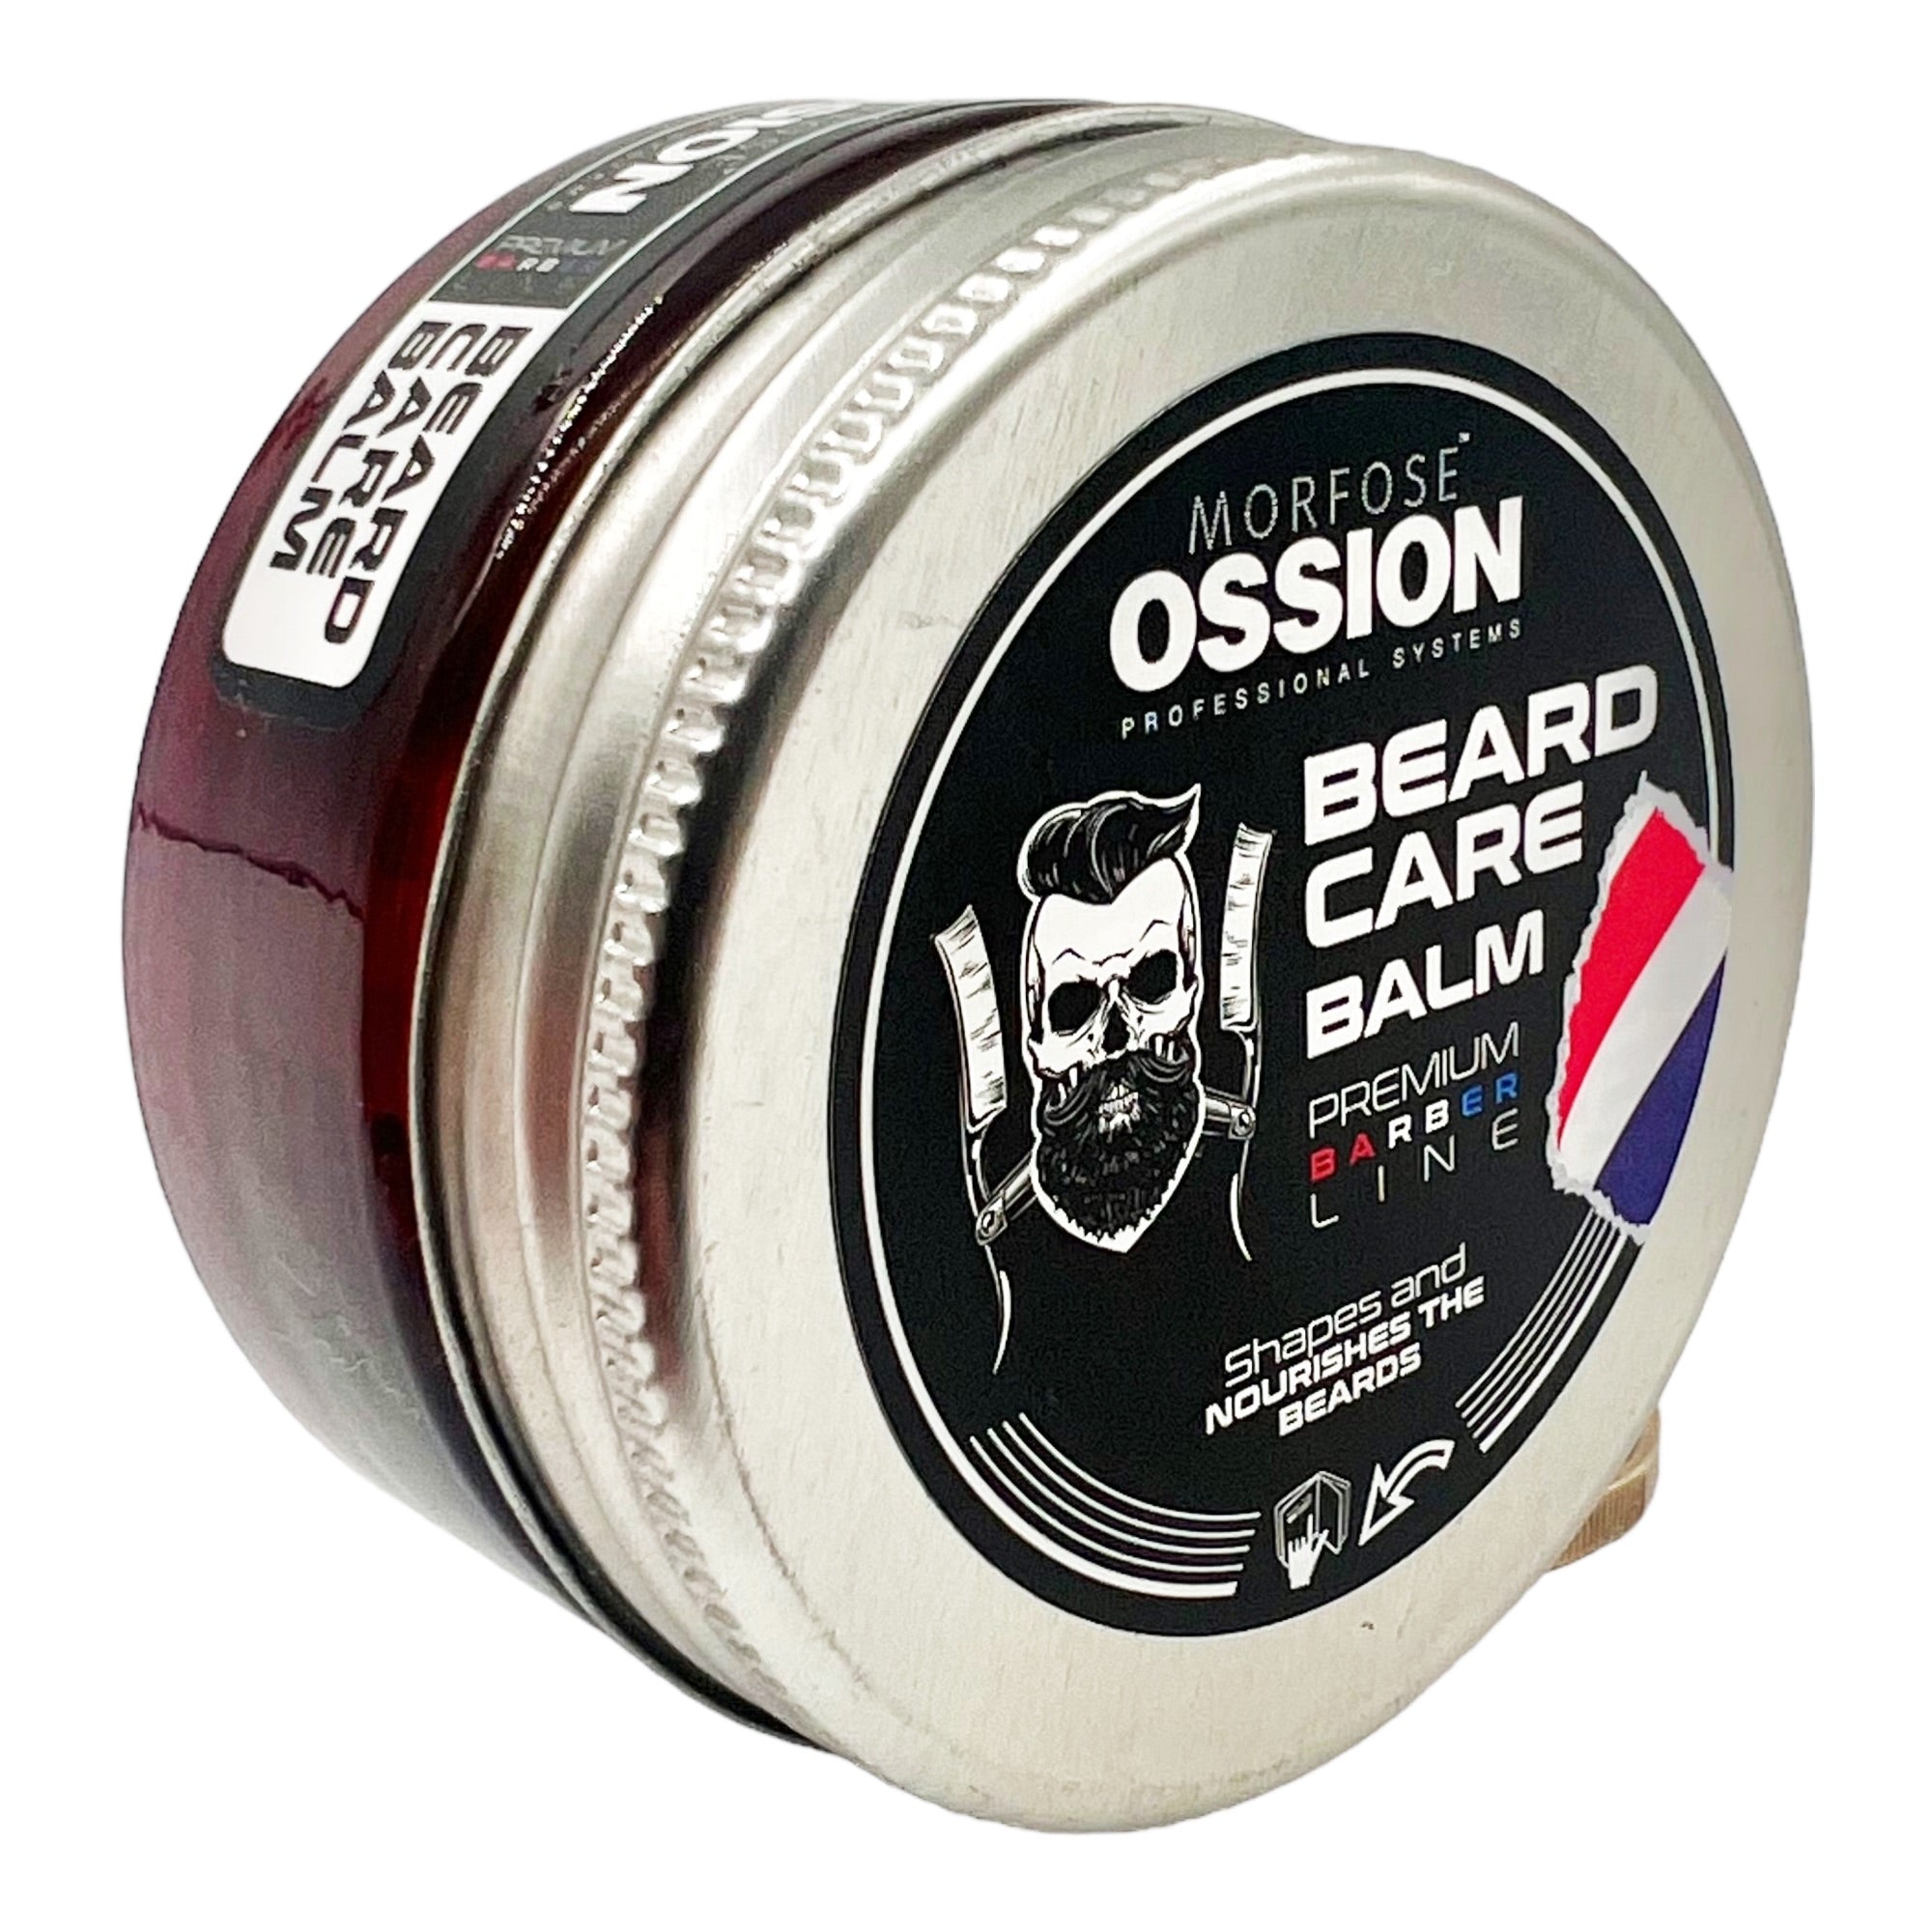 Morfose - Ossion Beard Care Balm 50ml